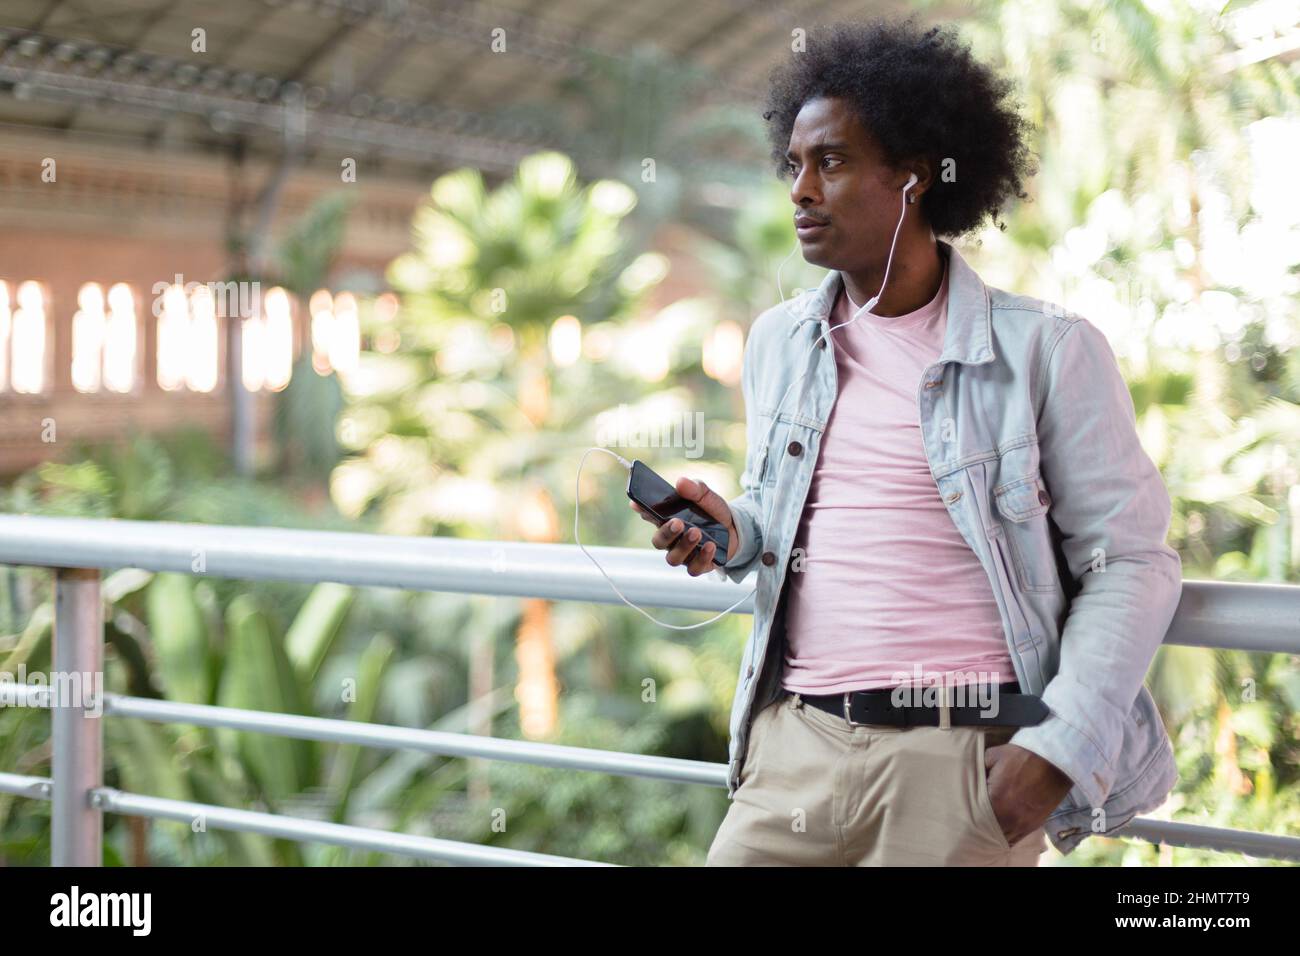 Un jeune homme afro-américain écoute de la musique depuis son téléphone. Espace pour le texte. Banque D'Images